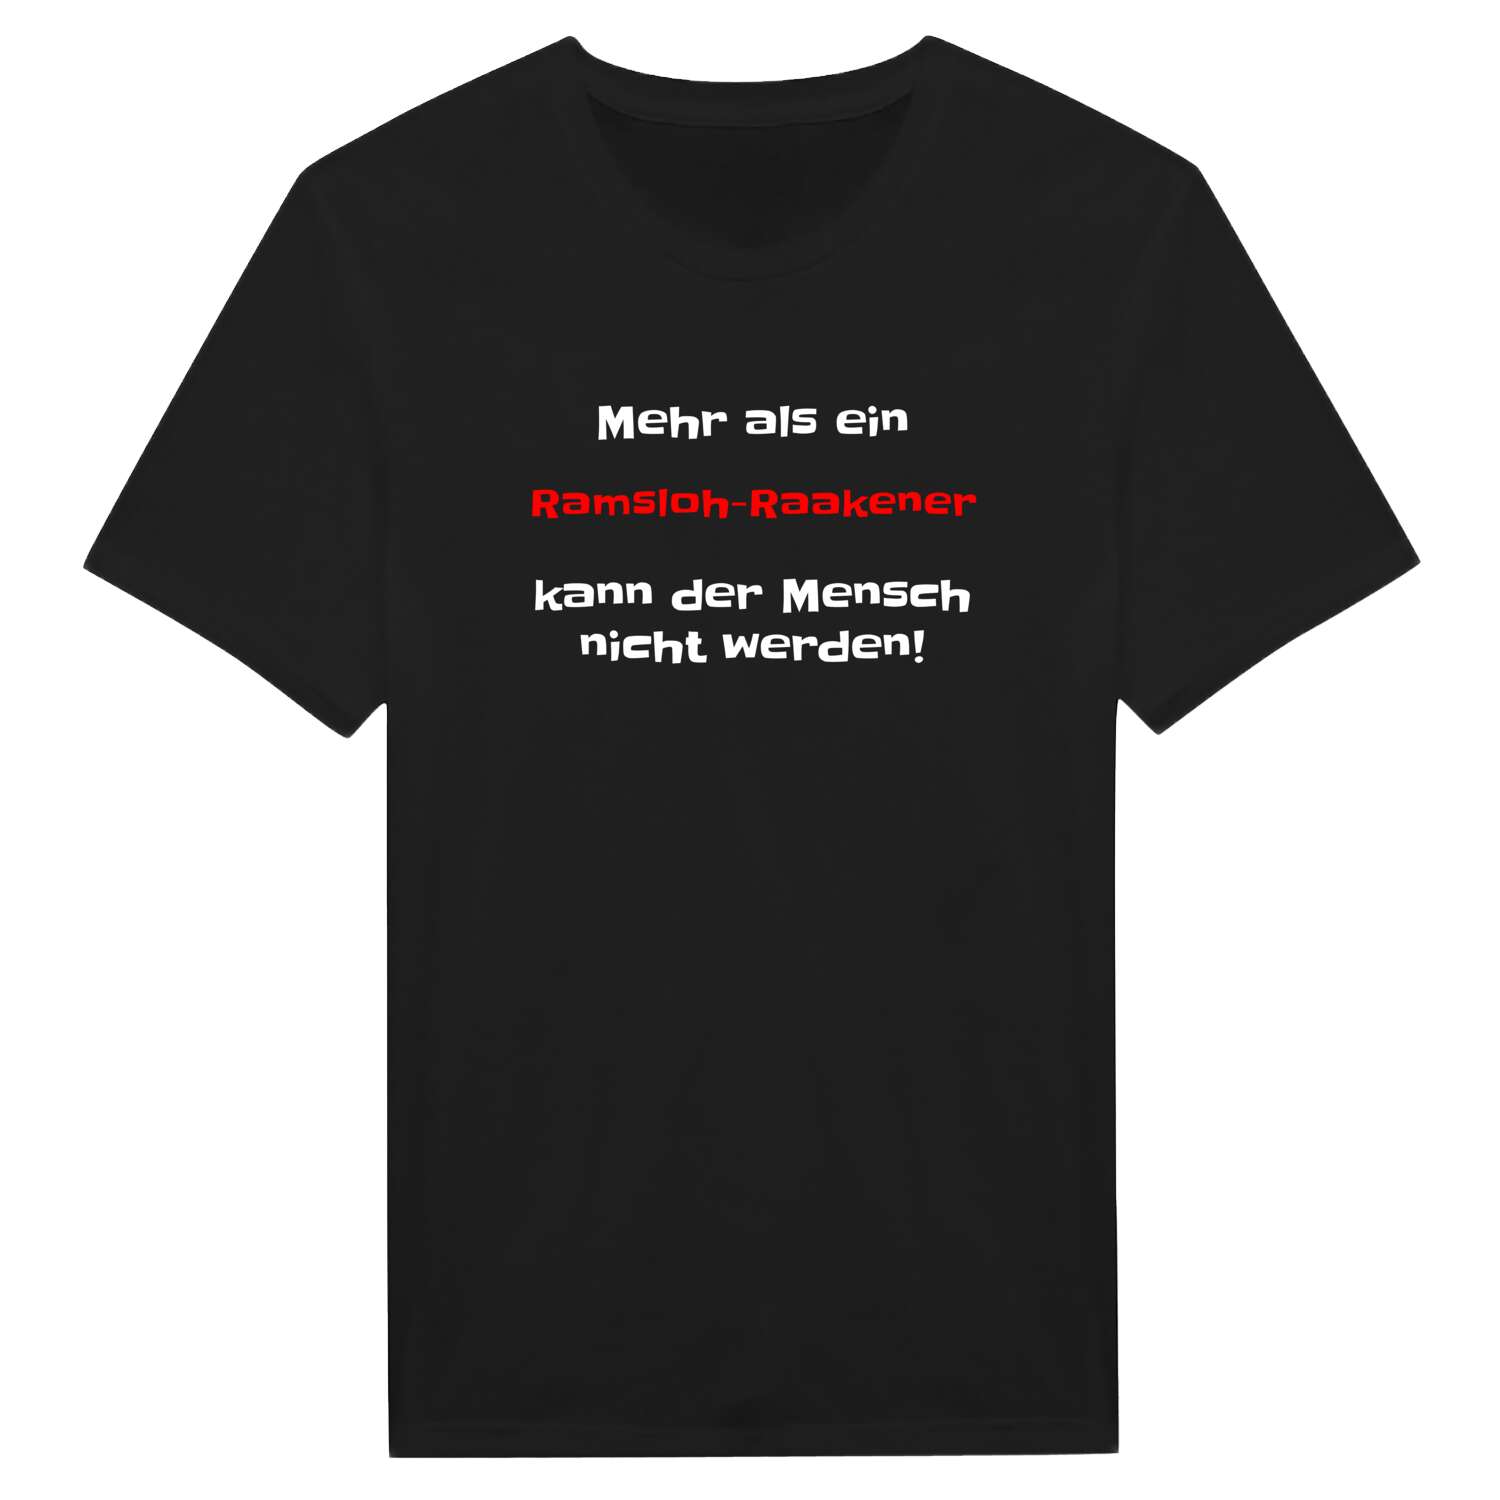 Ramsloh-Raake T-Shirt »Mehr als ein«